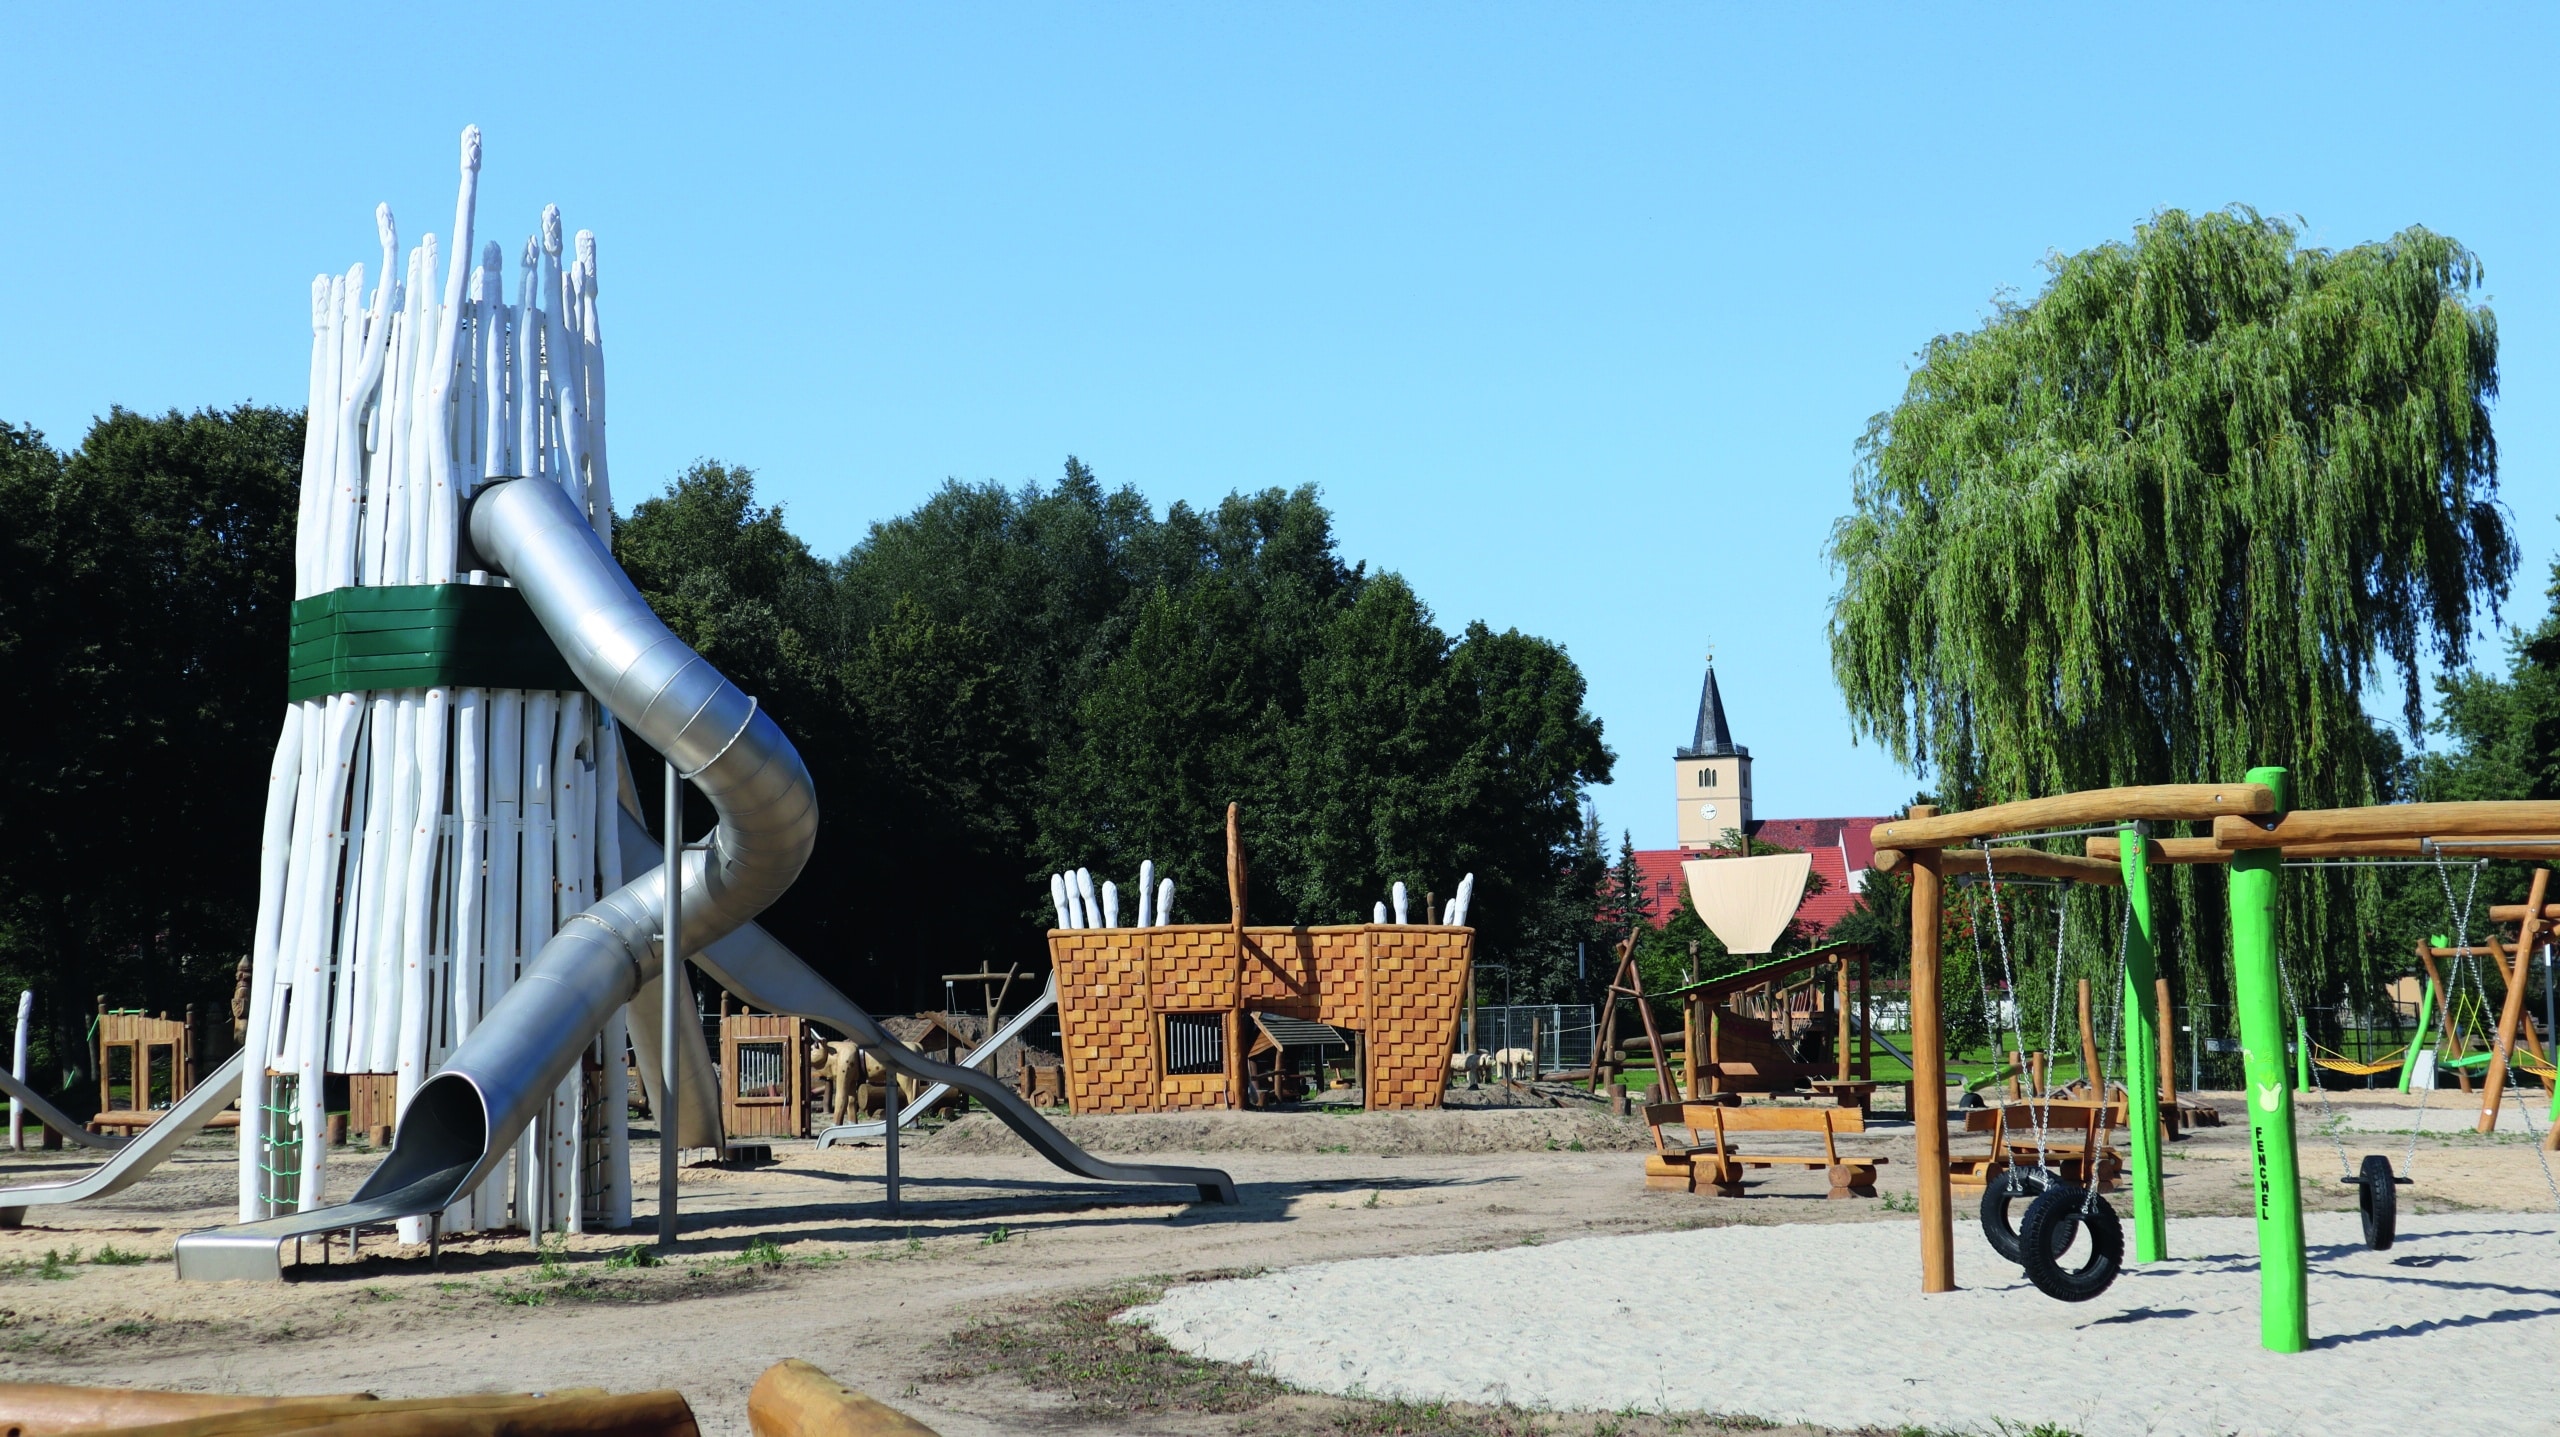 Das Gelände der Landesgartenschau umfasst eine Spiellandschaft von knapp 5 000 Quadratmetern. Ein wiederkehrendes Spielelement: der Spargel. Foto: LAGA Beelitz gGmbH